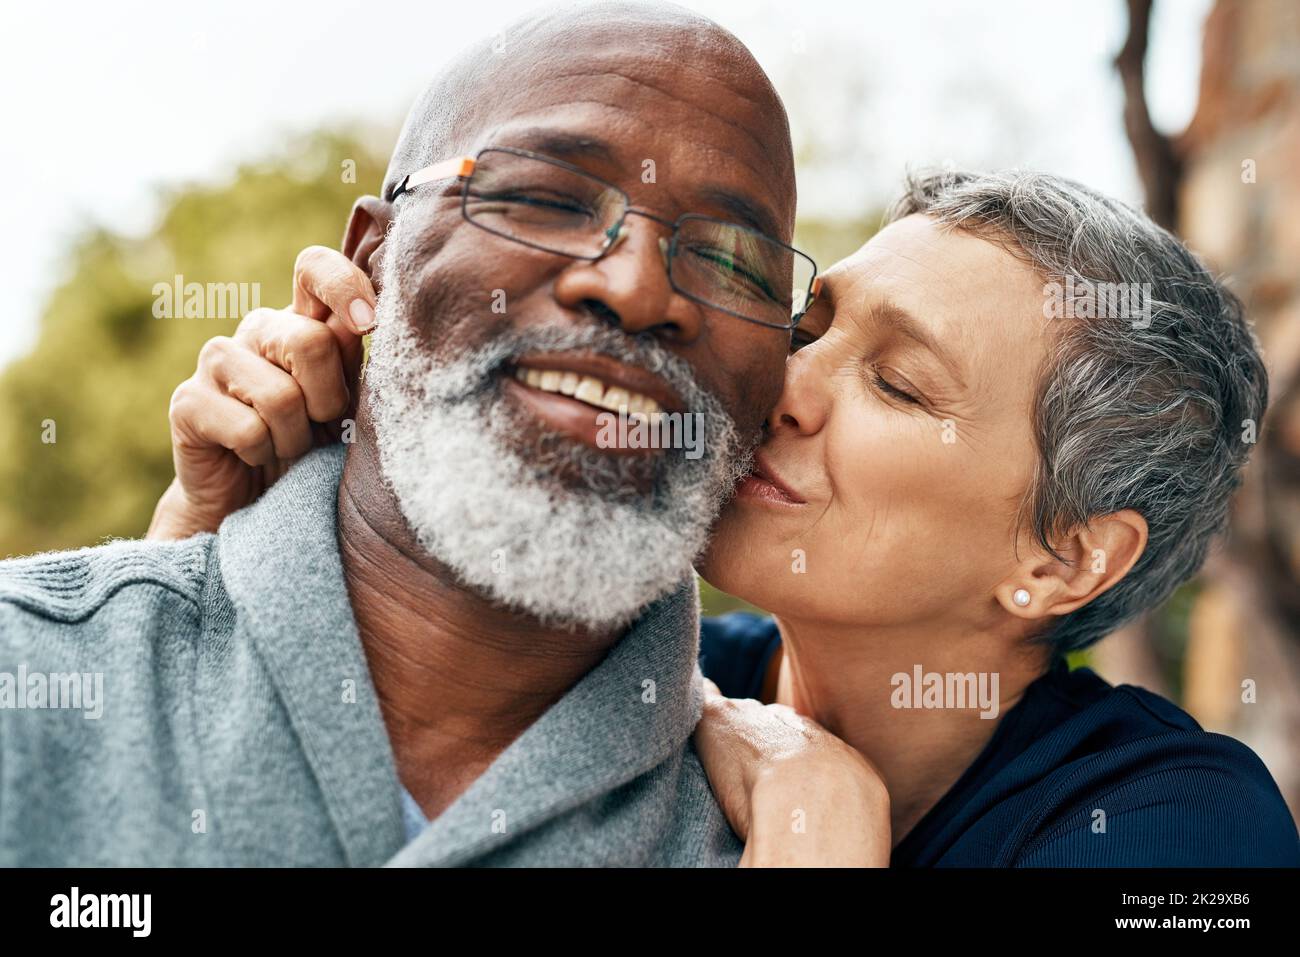 Notre amour se renforce chaque jour. Photo d'un couple senior heureux profitant d'un séjour de qualité au parc. Banque D'Images